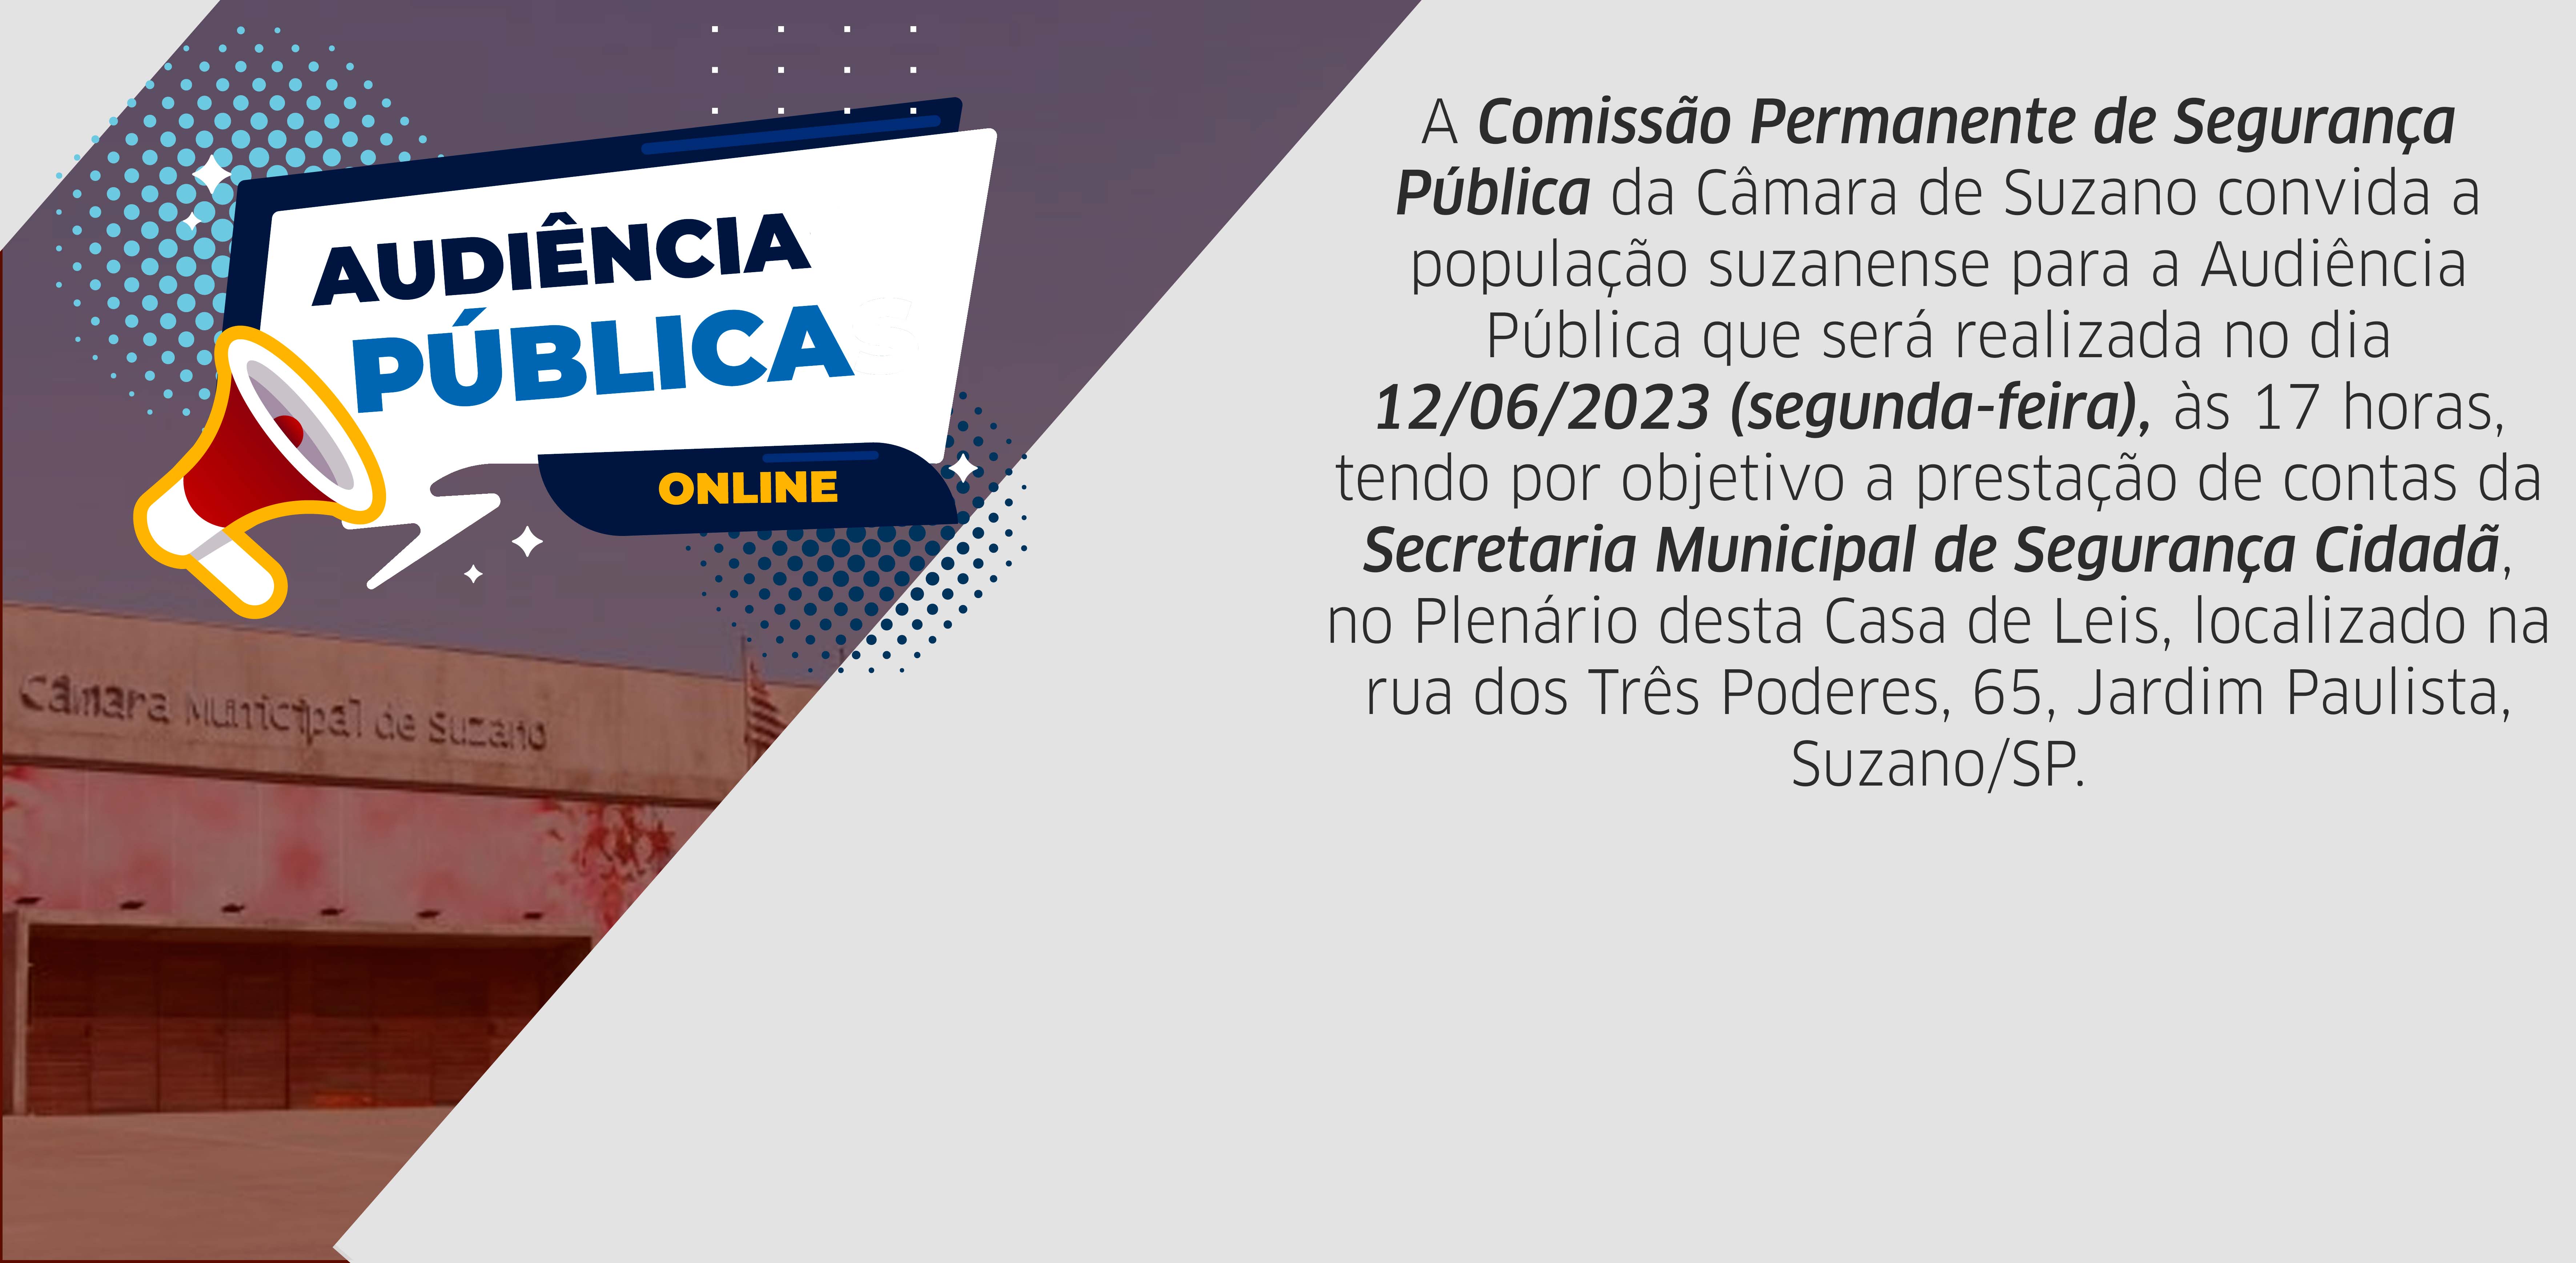  Câmara de Suzano convida a população suzanense para a Audiência Pública que será realizada no dia 12/06/2023 às 17 horas,